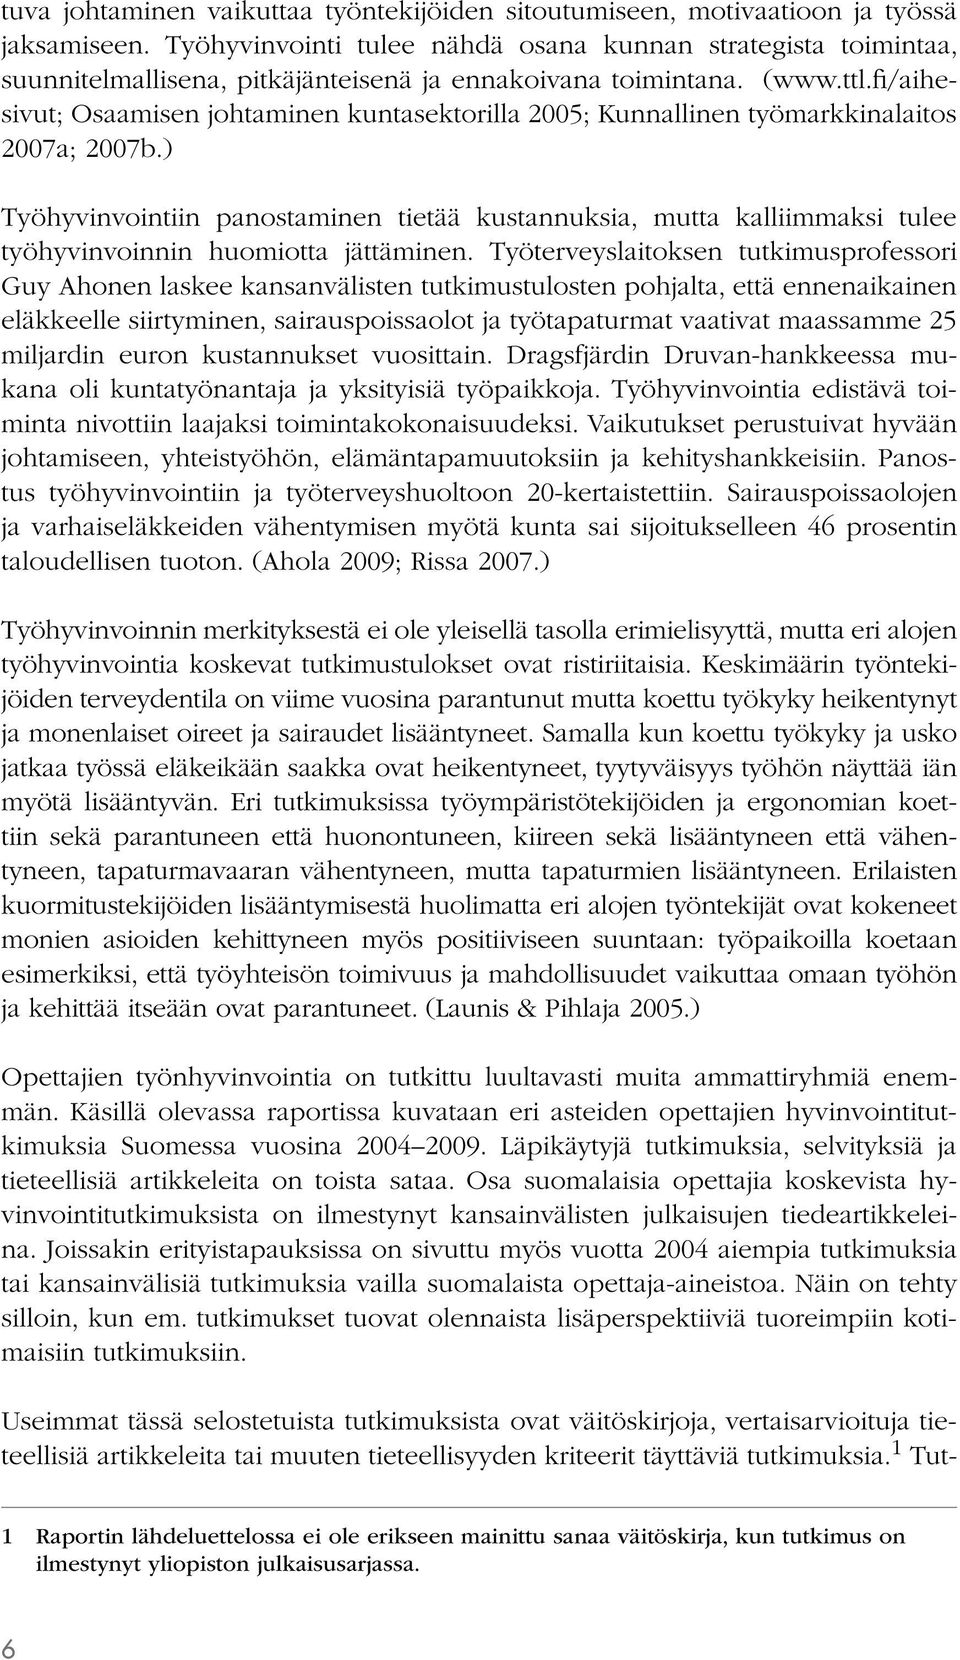 fi/aihesivut; Osaamisen johtaminen kuntasektorilla 2005; Kunnallinen työmarkkinalaitos 2007a; 2007b.